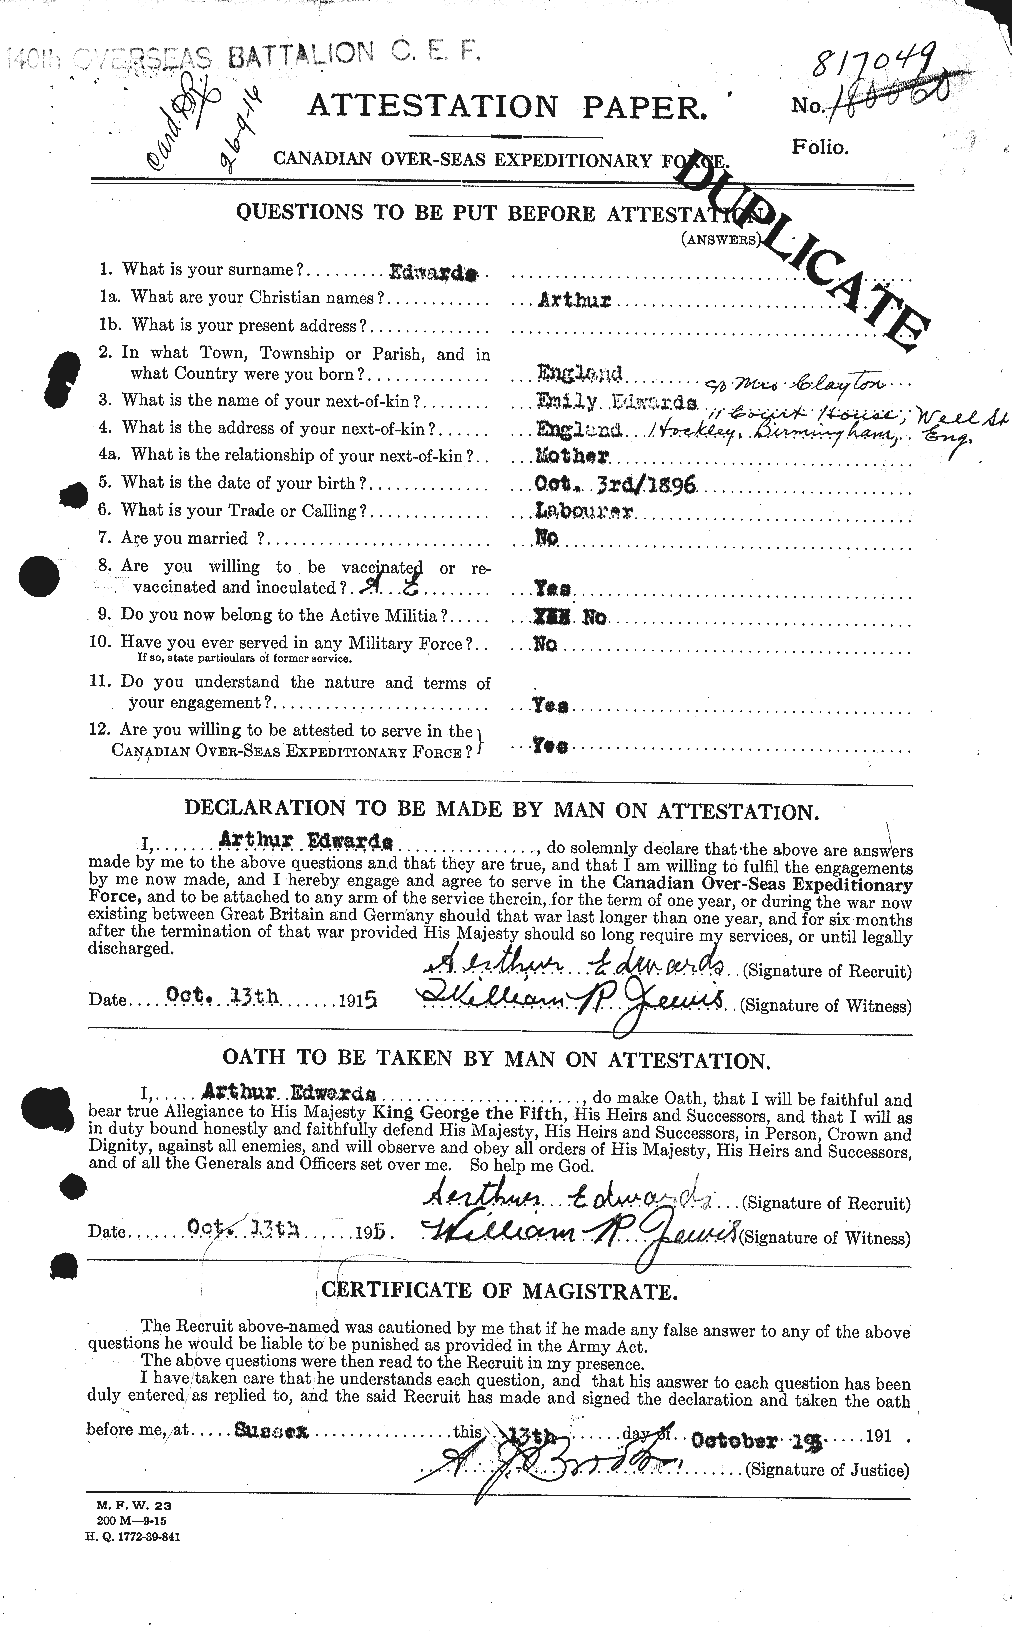 Dossiers du Personnel de la Première Guerre mondiale - CEC 313129a